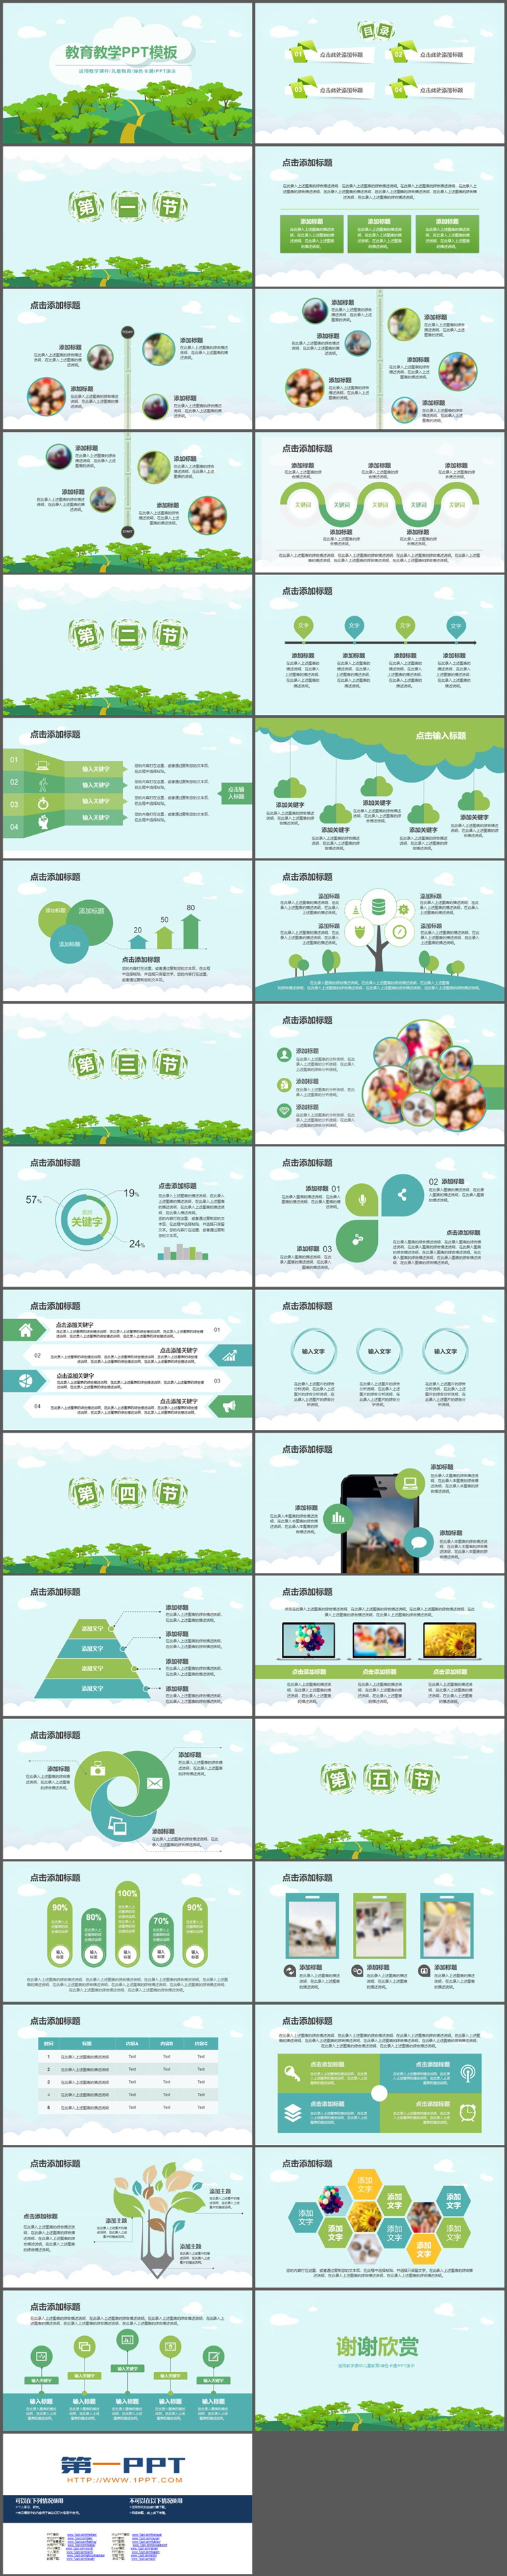 绿色卡通森林背景的教育教学主题PPT模板